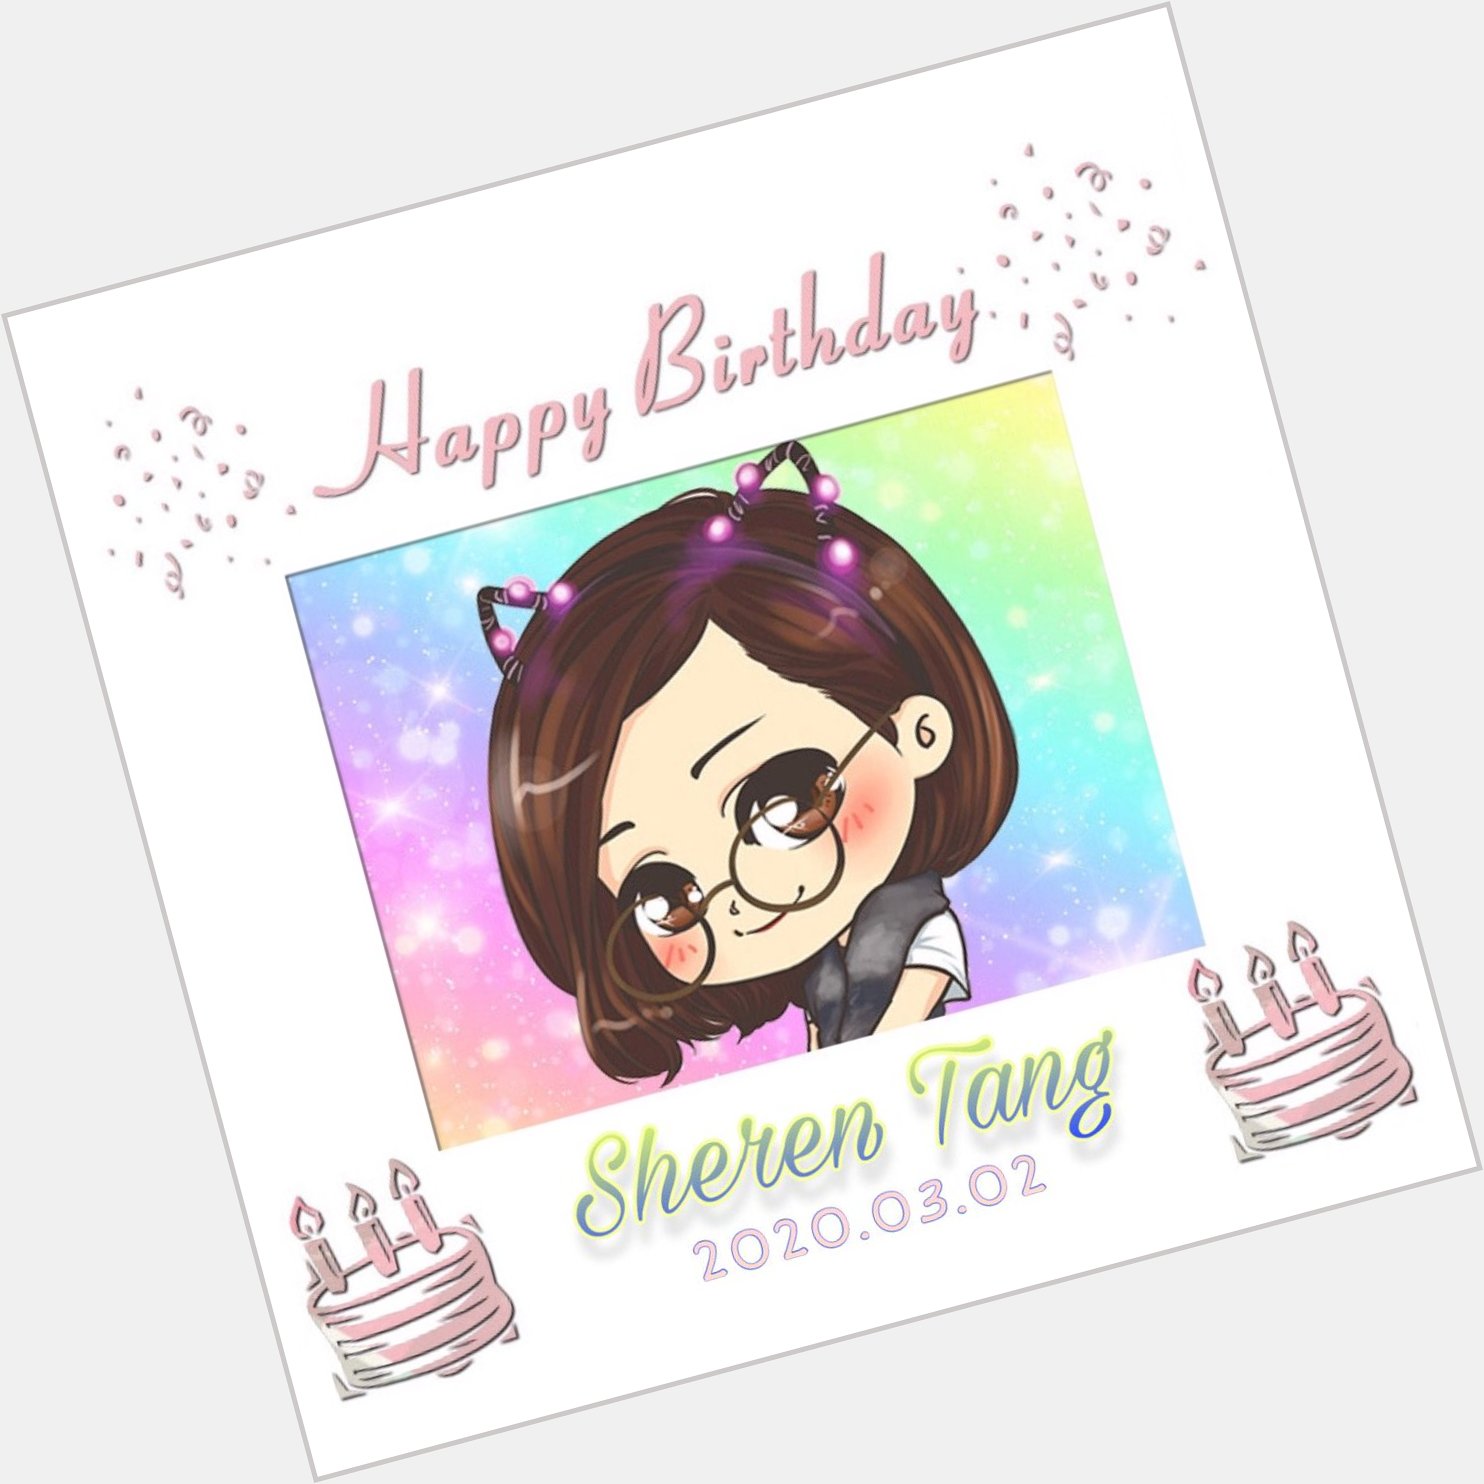 Happy Birthday to Sheren Tang     